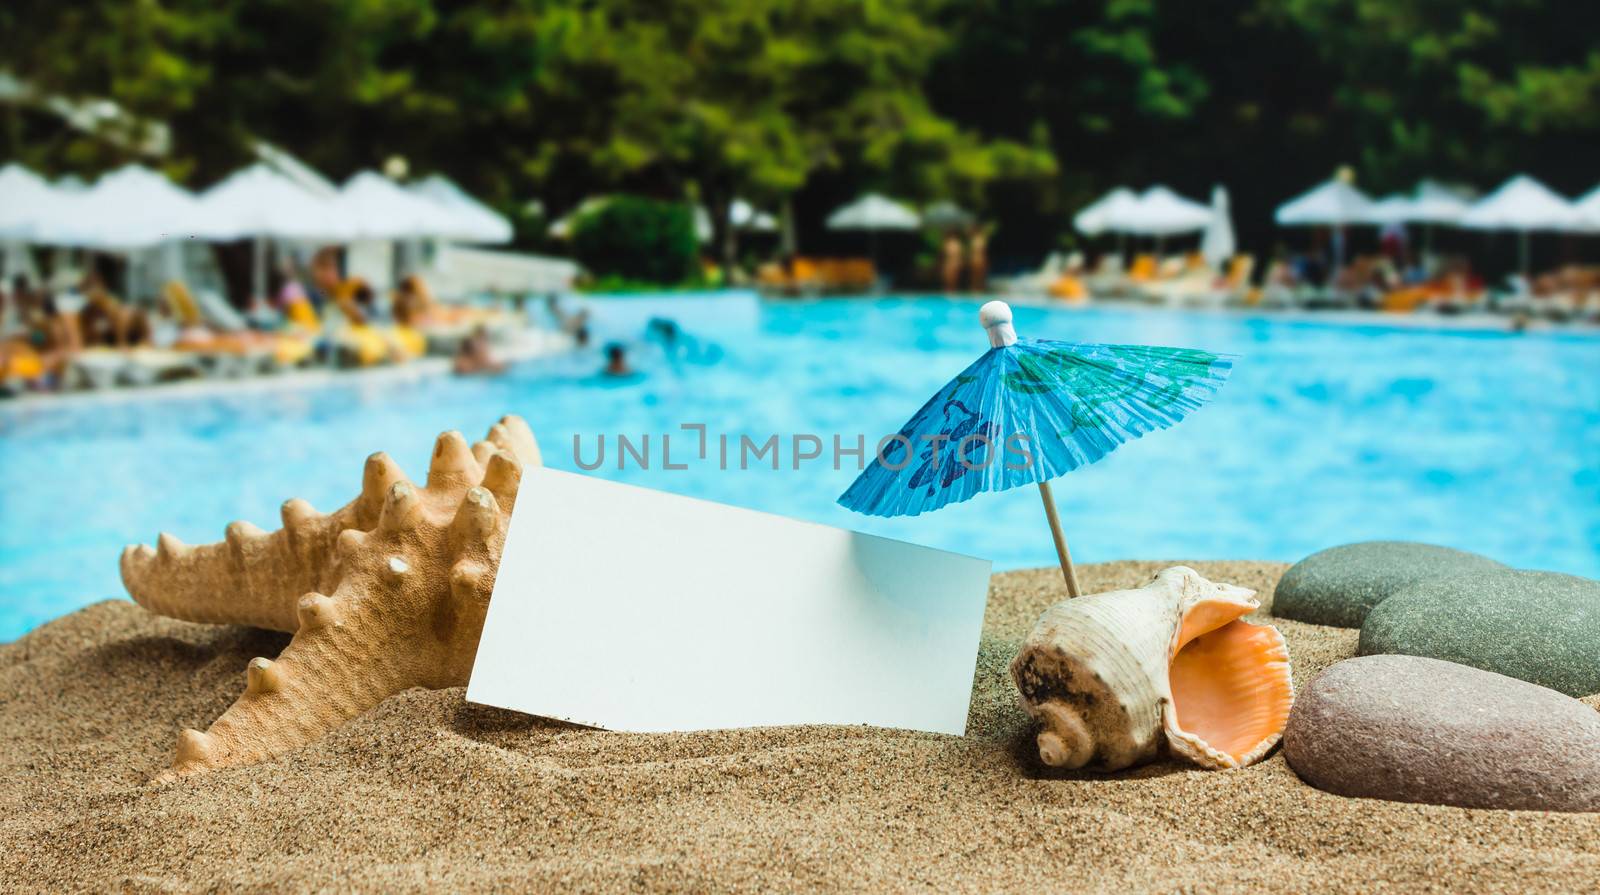 Umbrella on the sand by oleg_zhukov